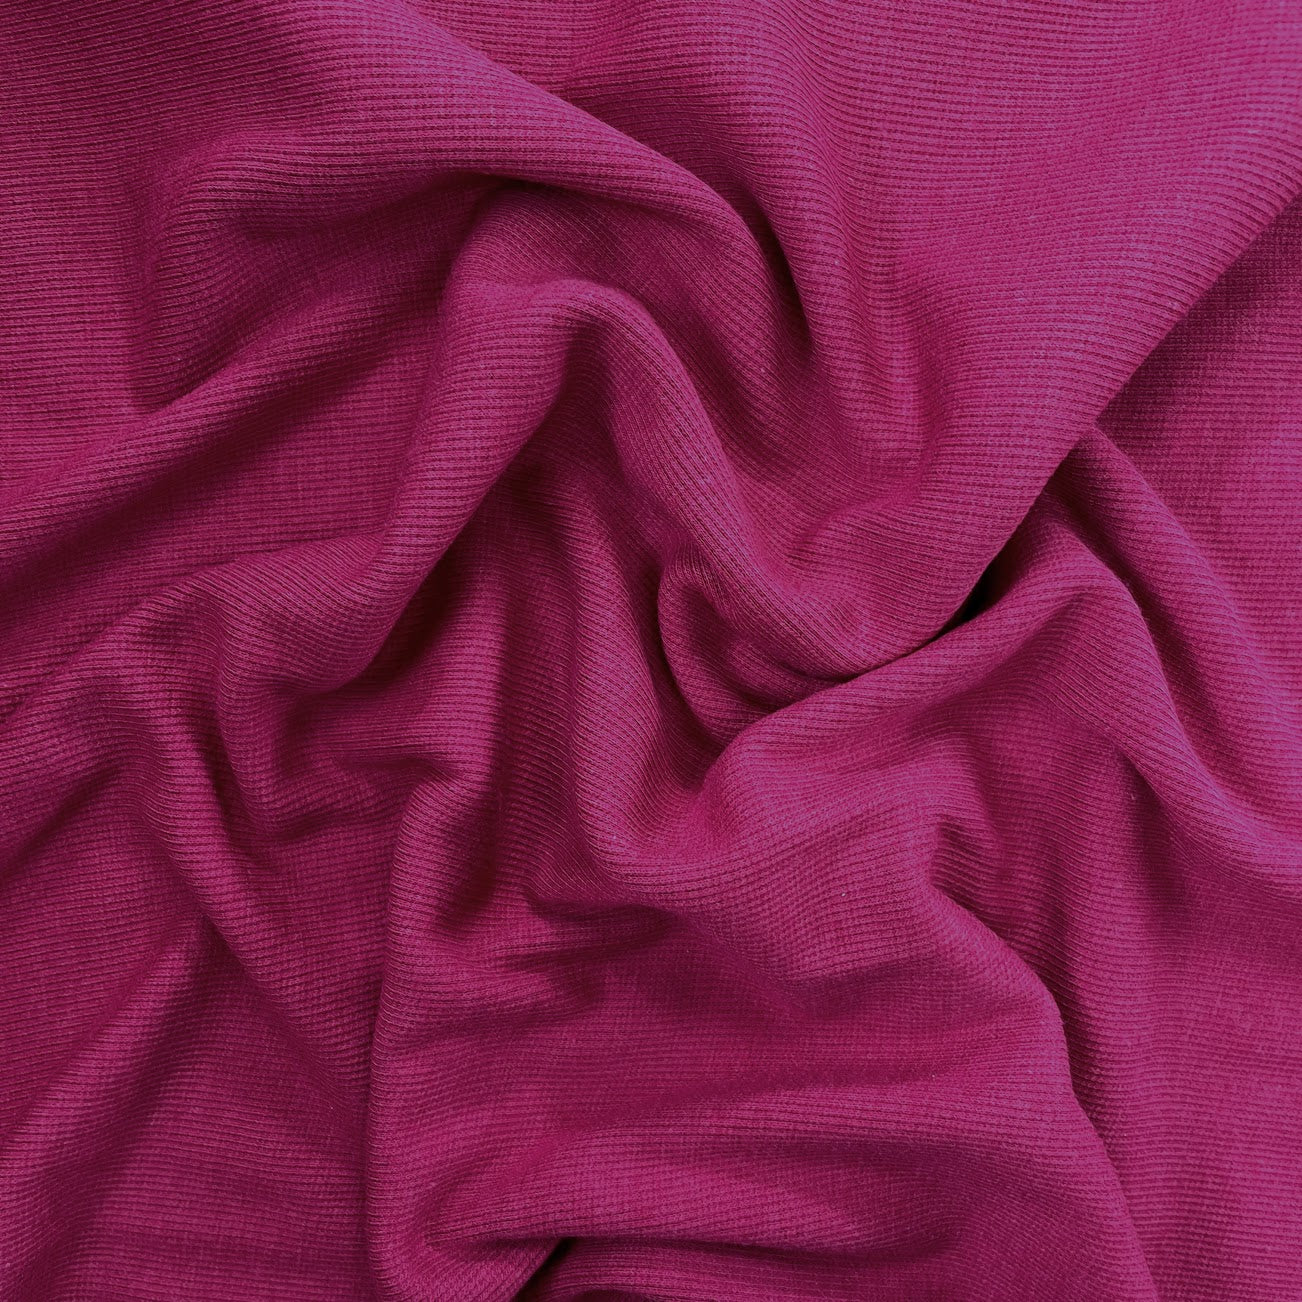 Bamboo Cotton Rib 2x2 - Dark Pink - Ribbed Knit